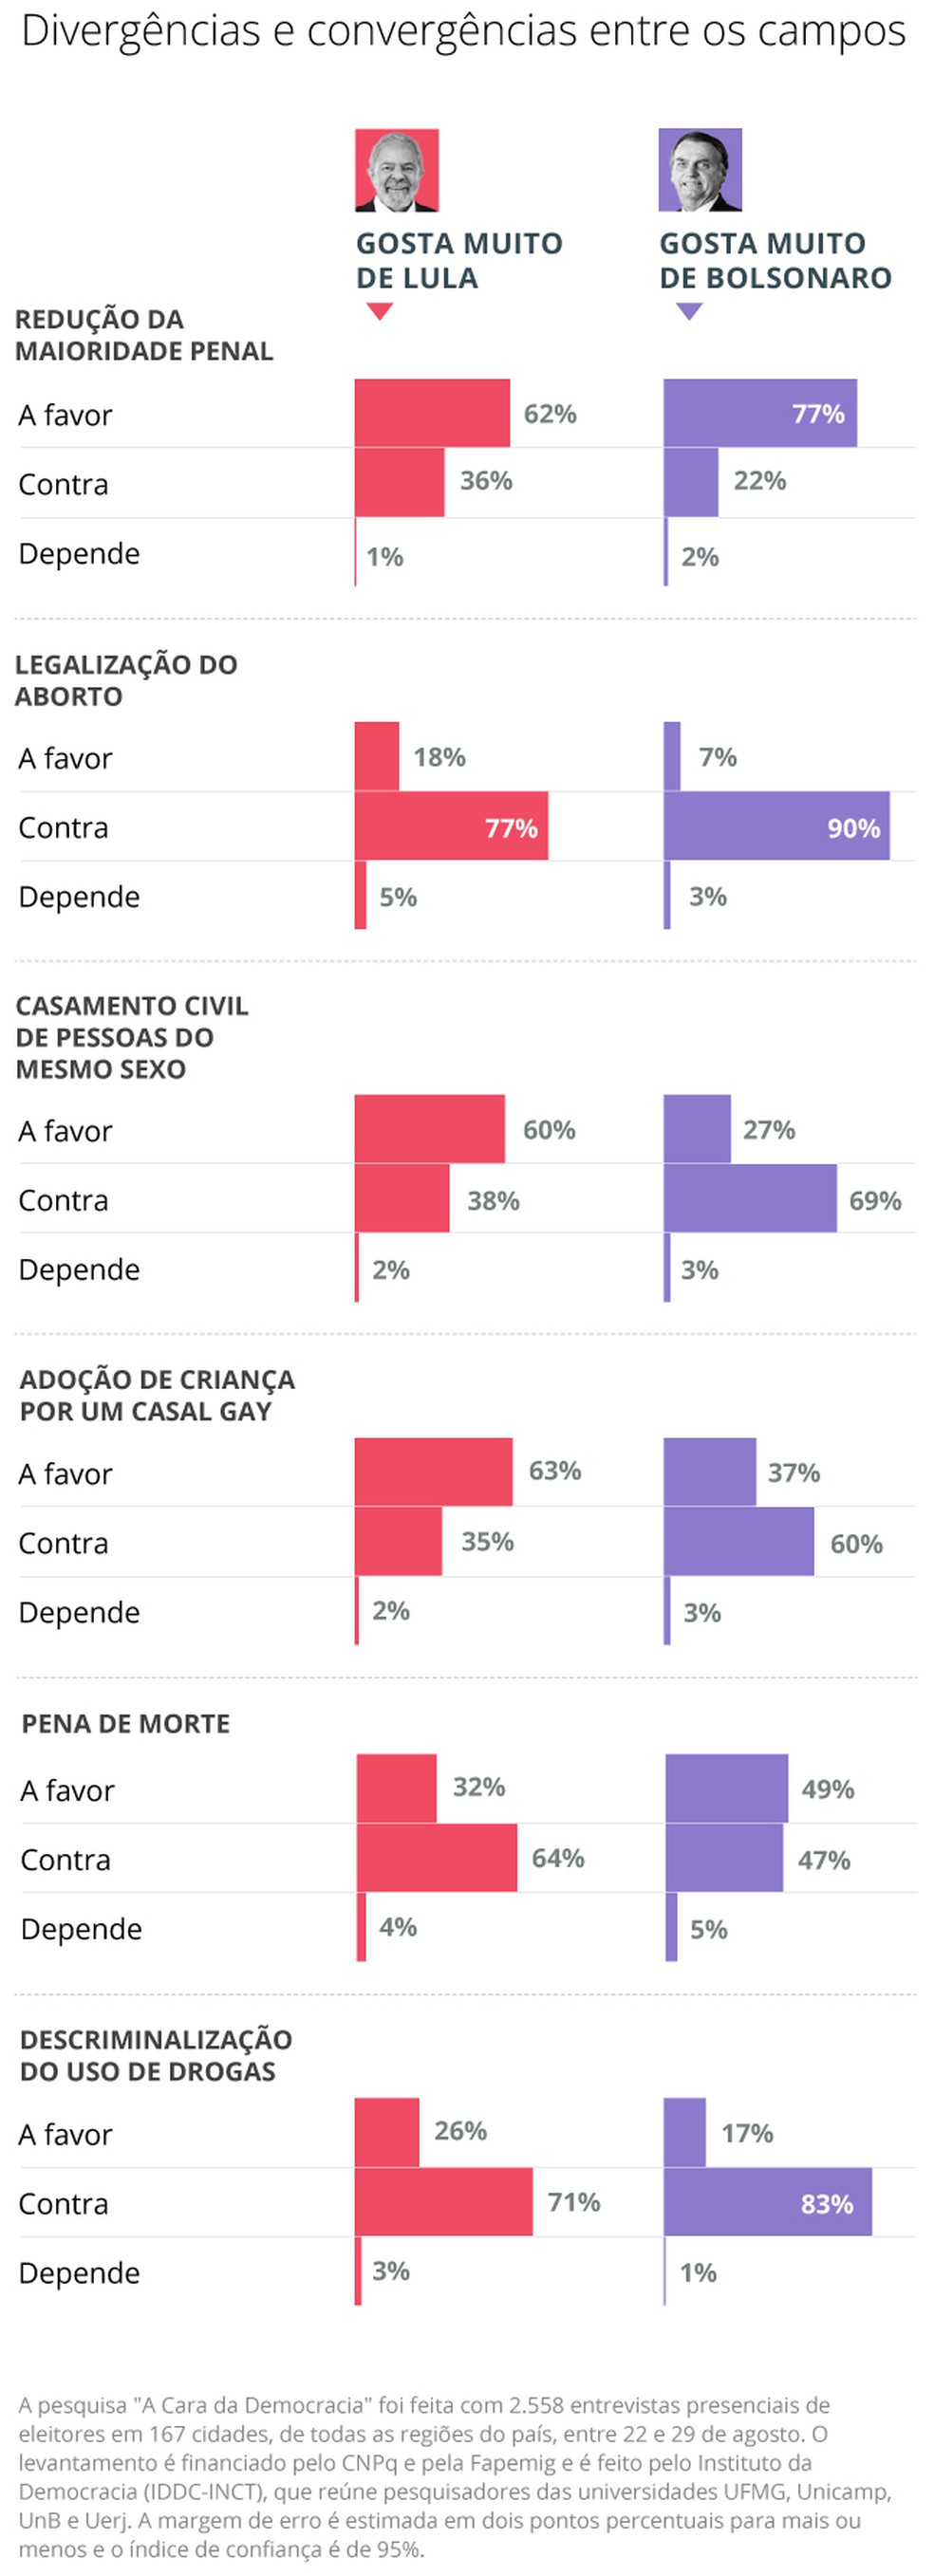 Pesquisa "A Cara da Democracia": opiniões divergentes e convergentes de eleitores que gostam muito de Lula e Bolsonaro — Foto: Arte / O Globo